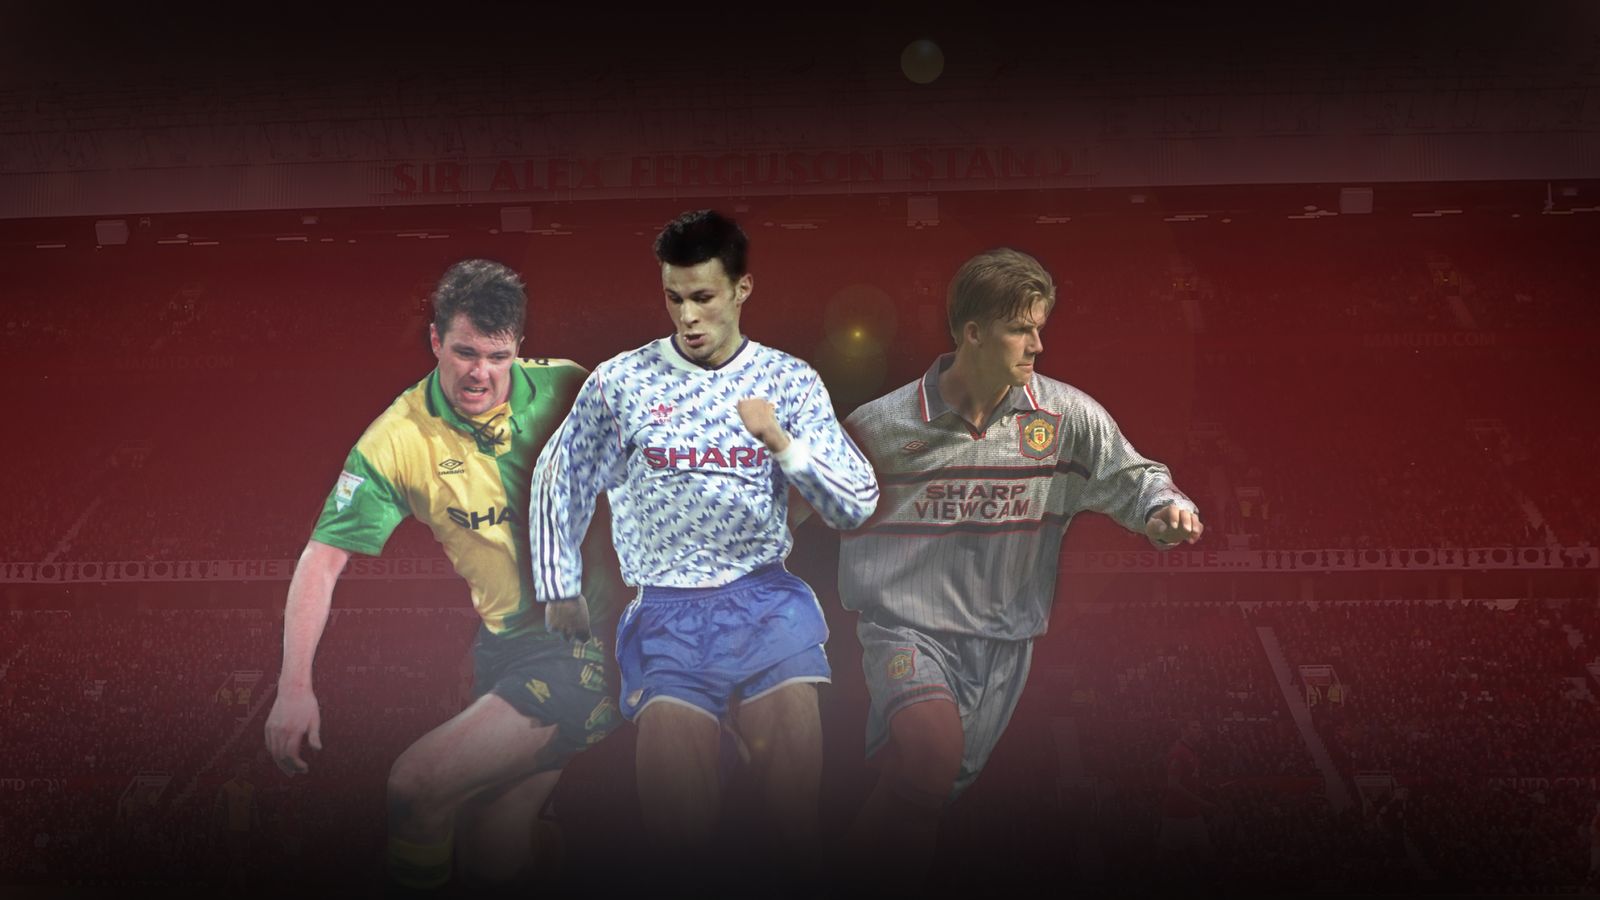 1990/91 Man Utd Home Shirt L)  Classic football shirts, Old football shirts,  Football shirts